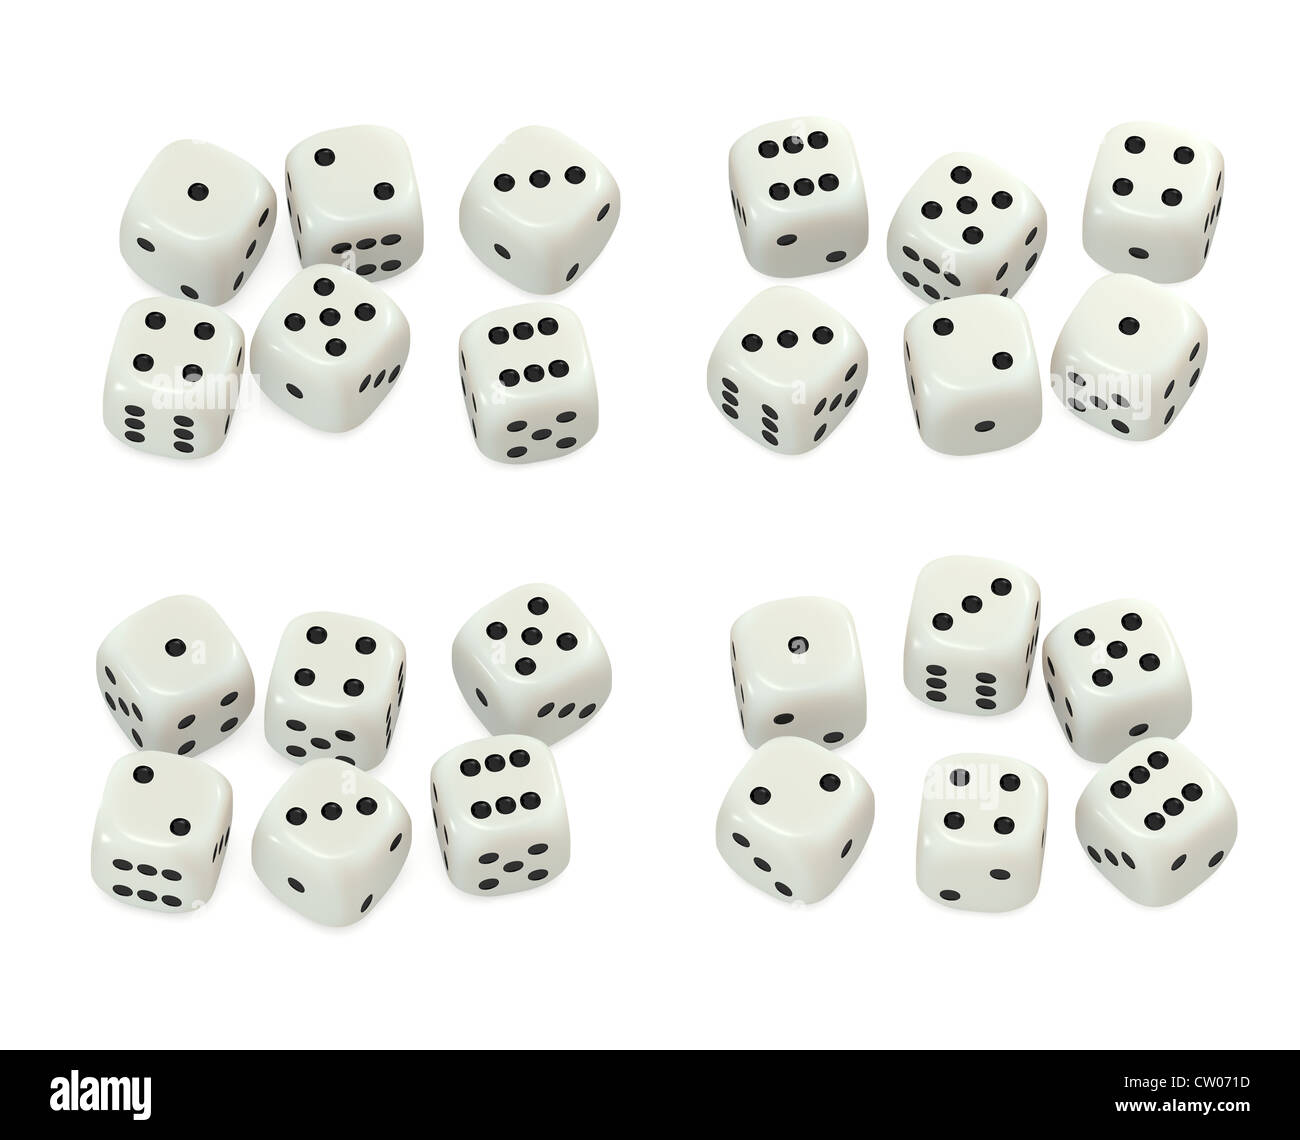 Würfel-Set - weiße Würfel Zahlen Stockfotografie - Alamy